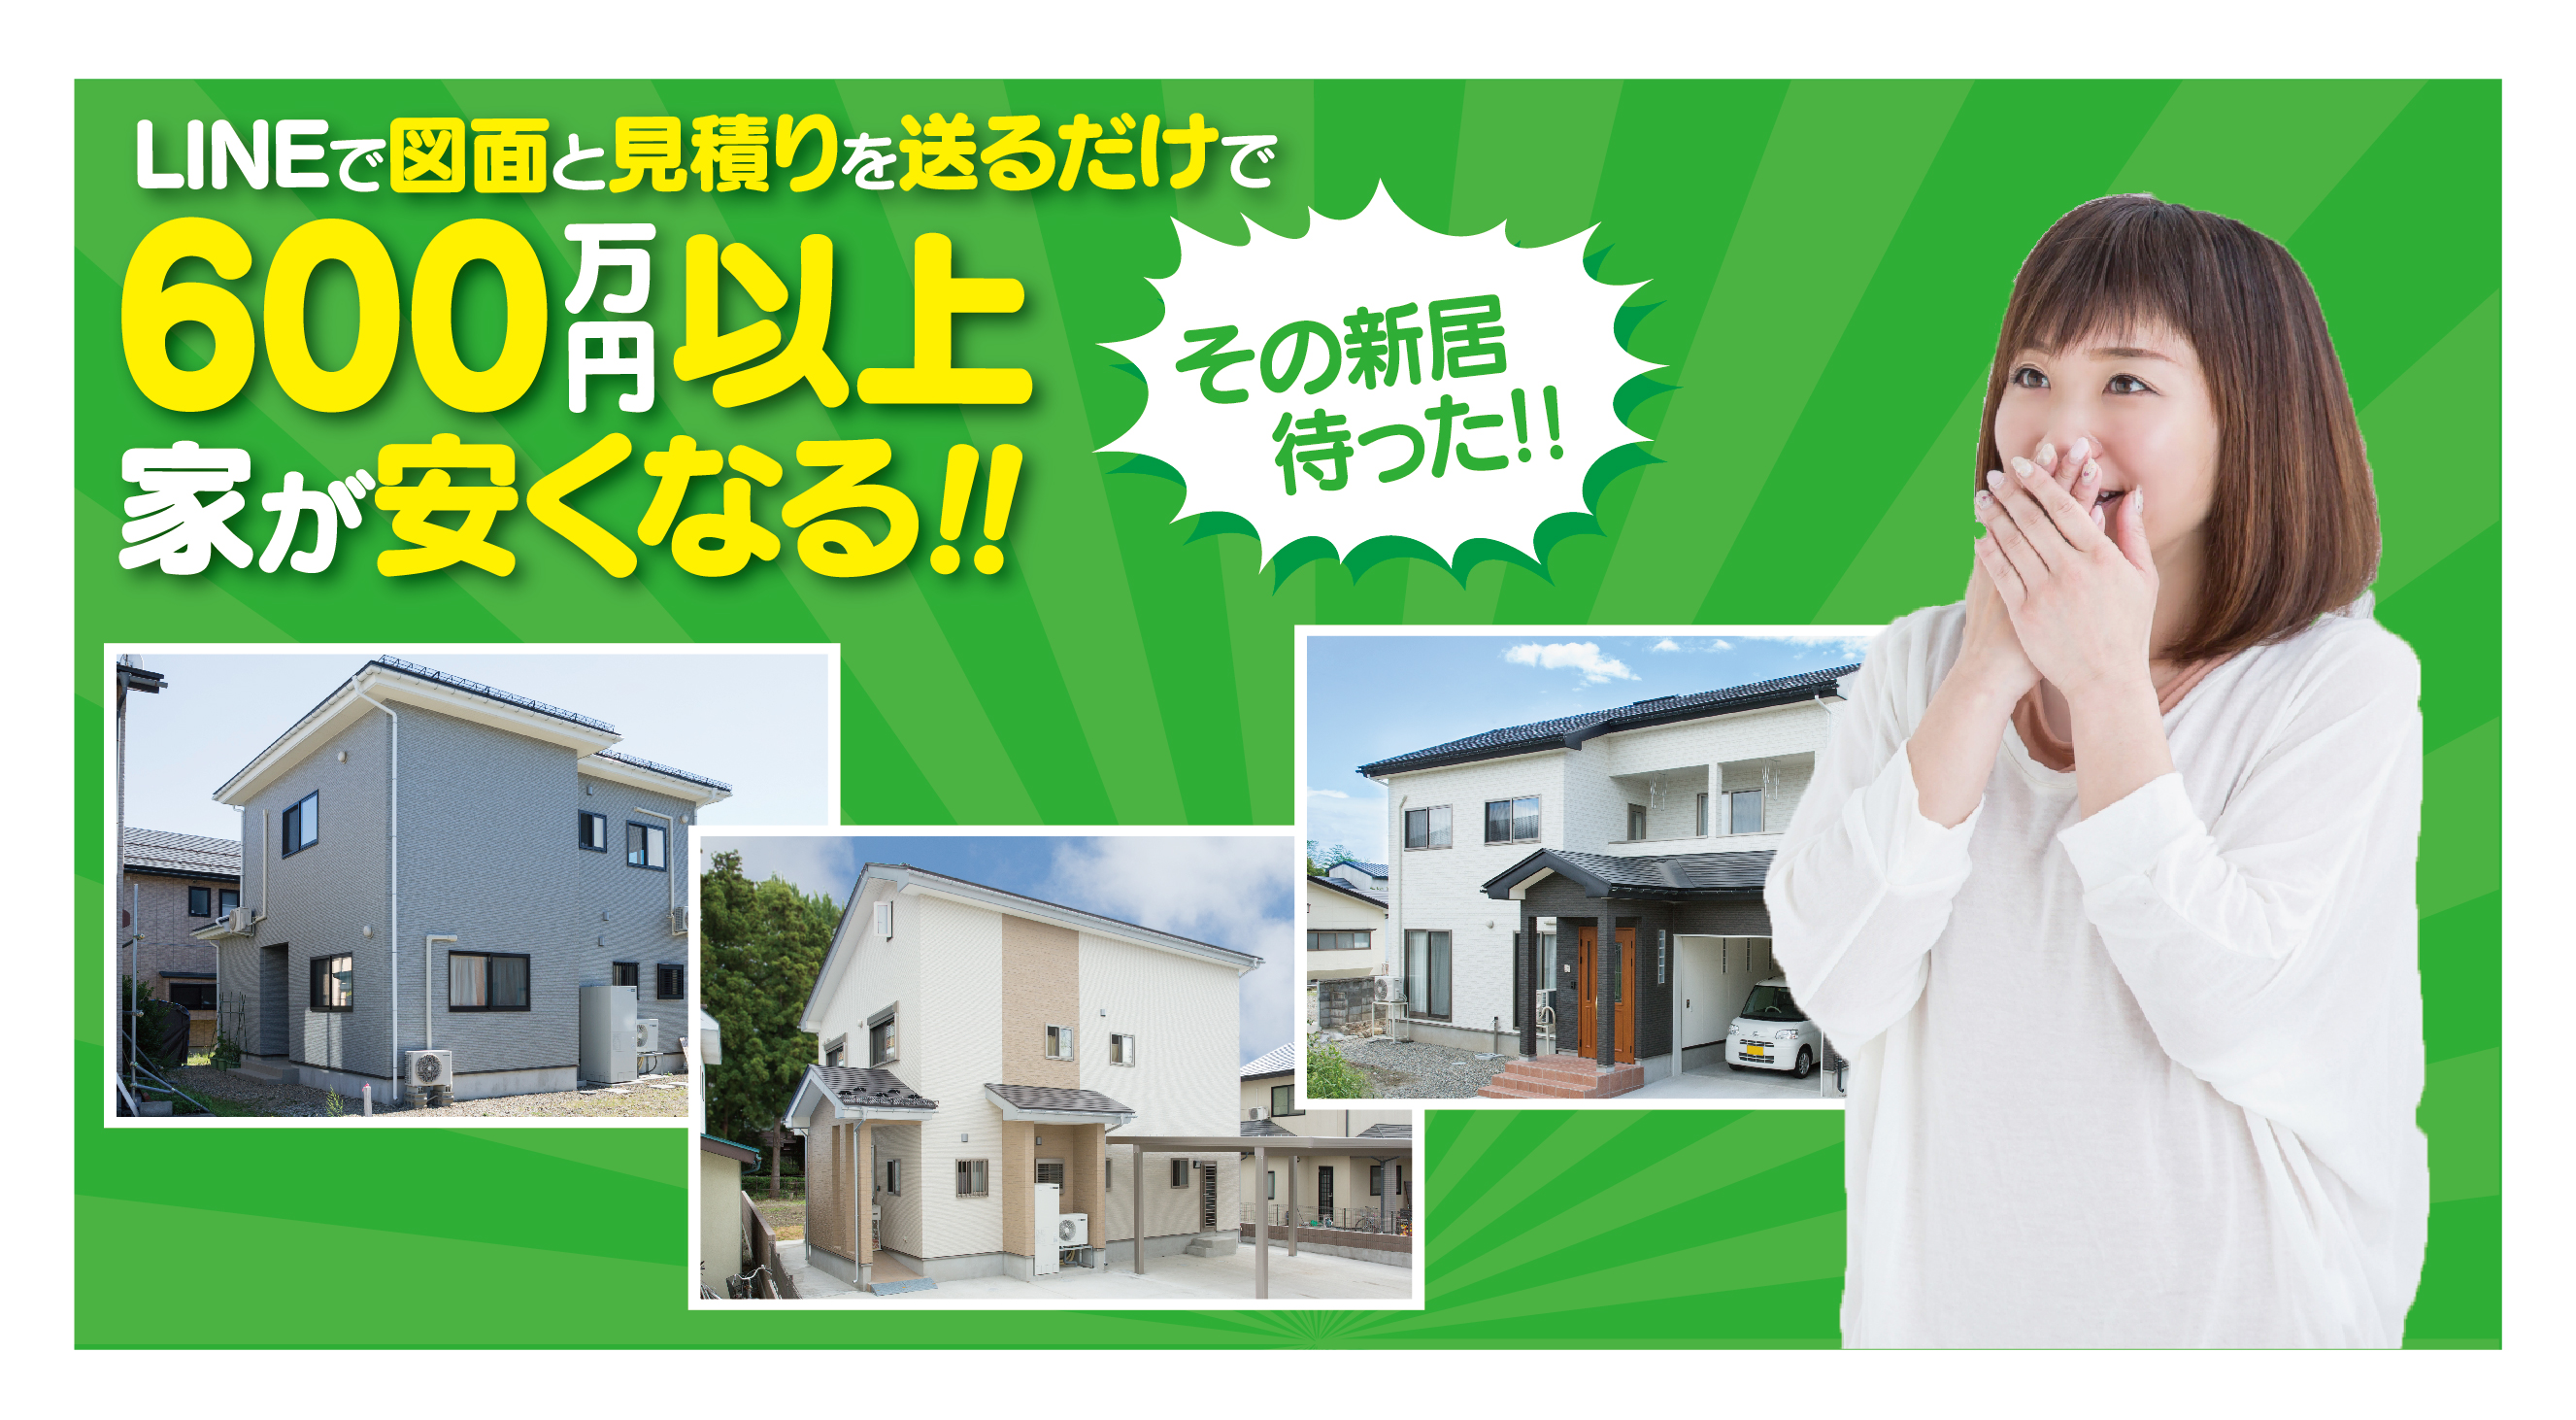 LGコンサルティングが福島県限定でプラン中の住宅が30%安くなる同時見積もりサービスを開始